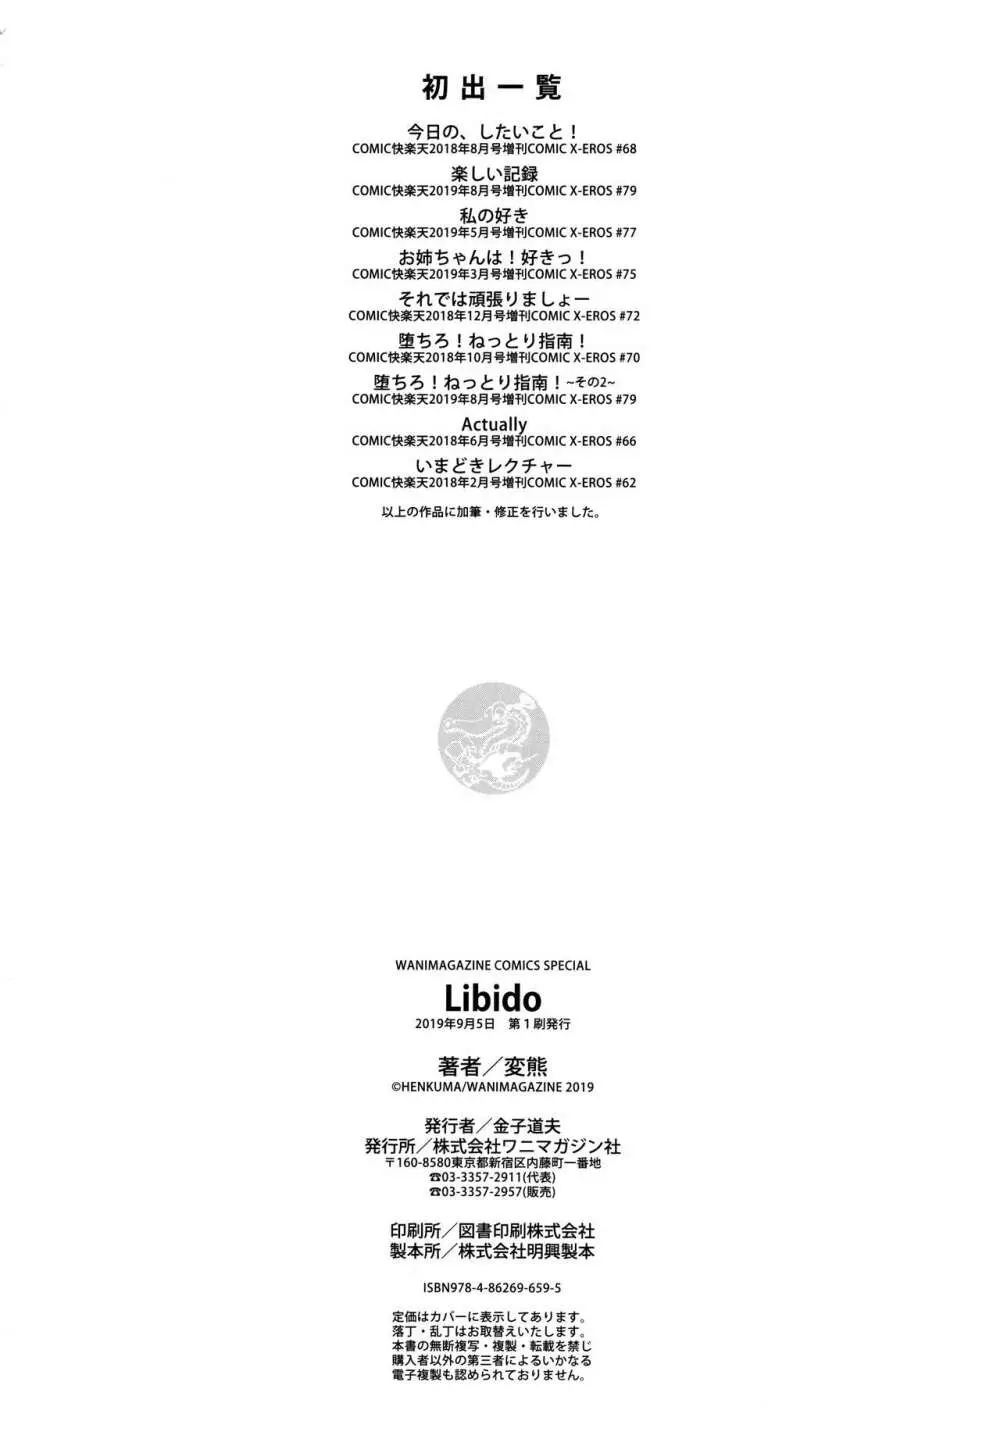 Libido + 4Pリーフレット 196ページ